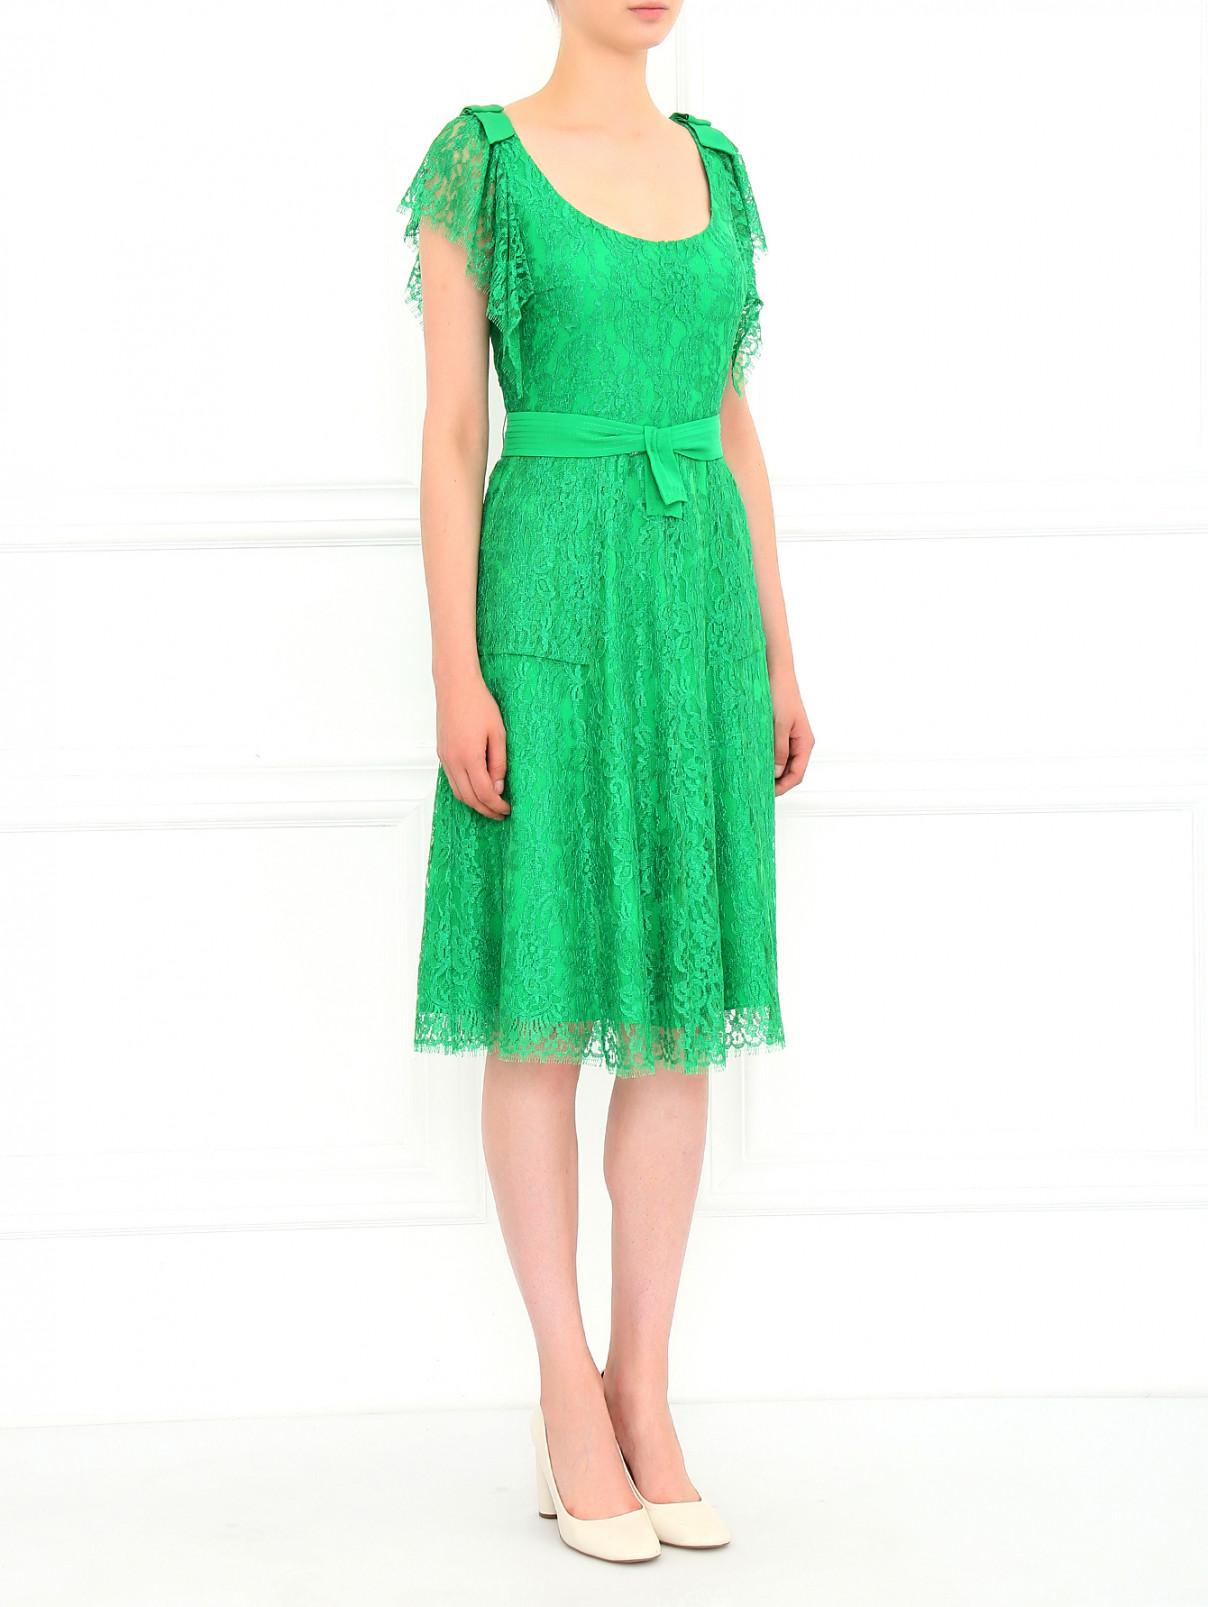 Платье-миди из кружева с поясом Collette Dinnigan  –  Модель Общий вид  – Цвет:  Зеленый